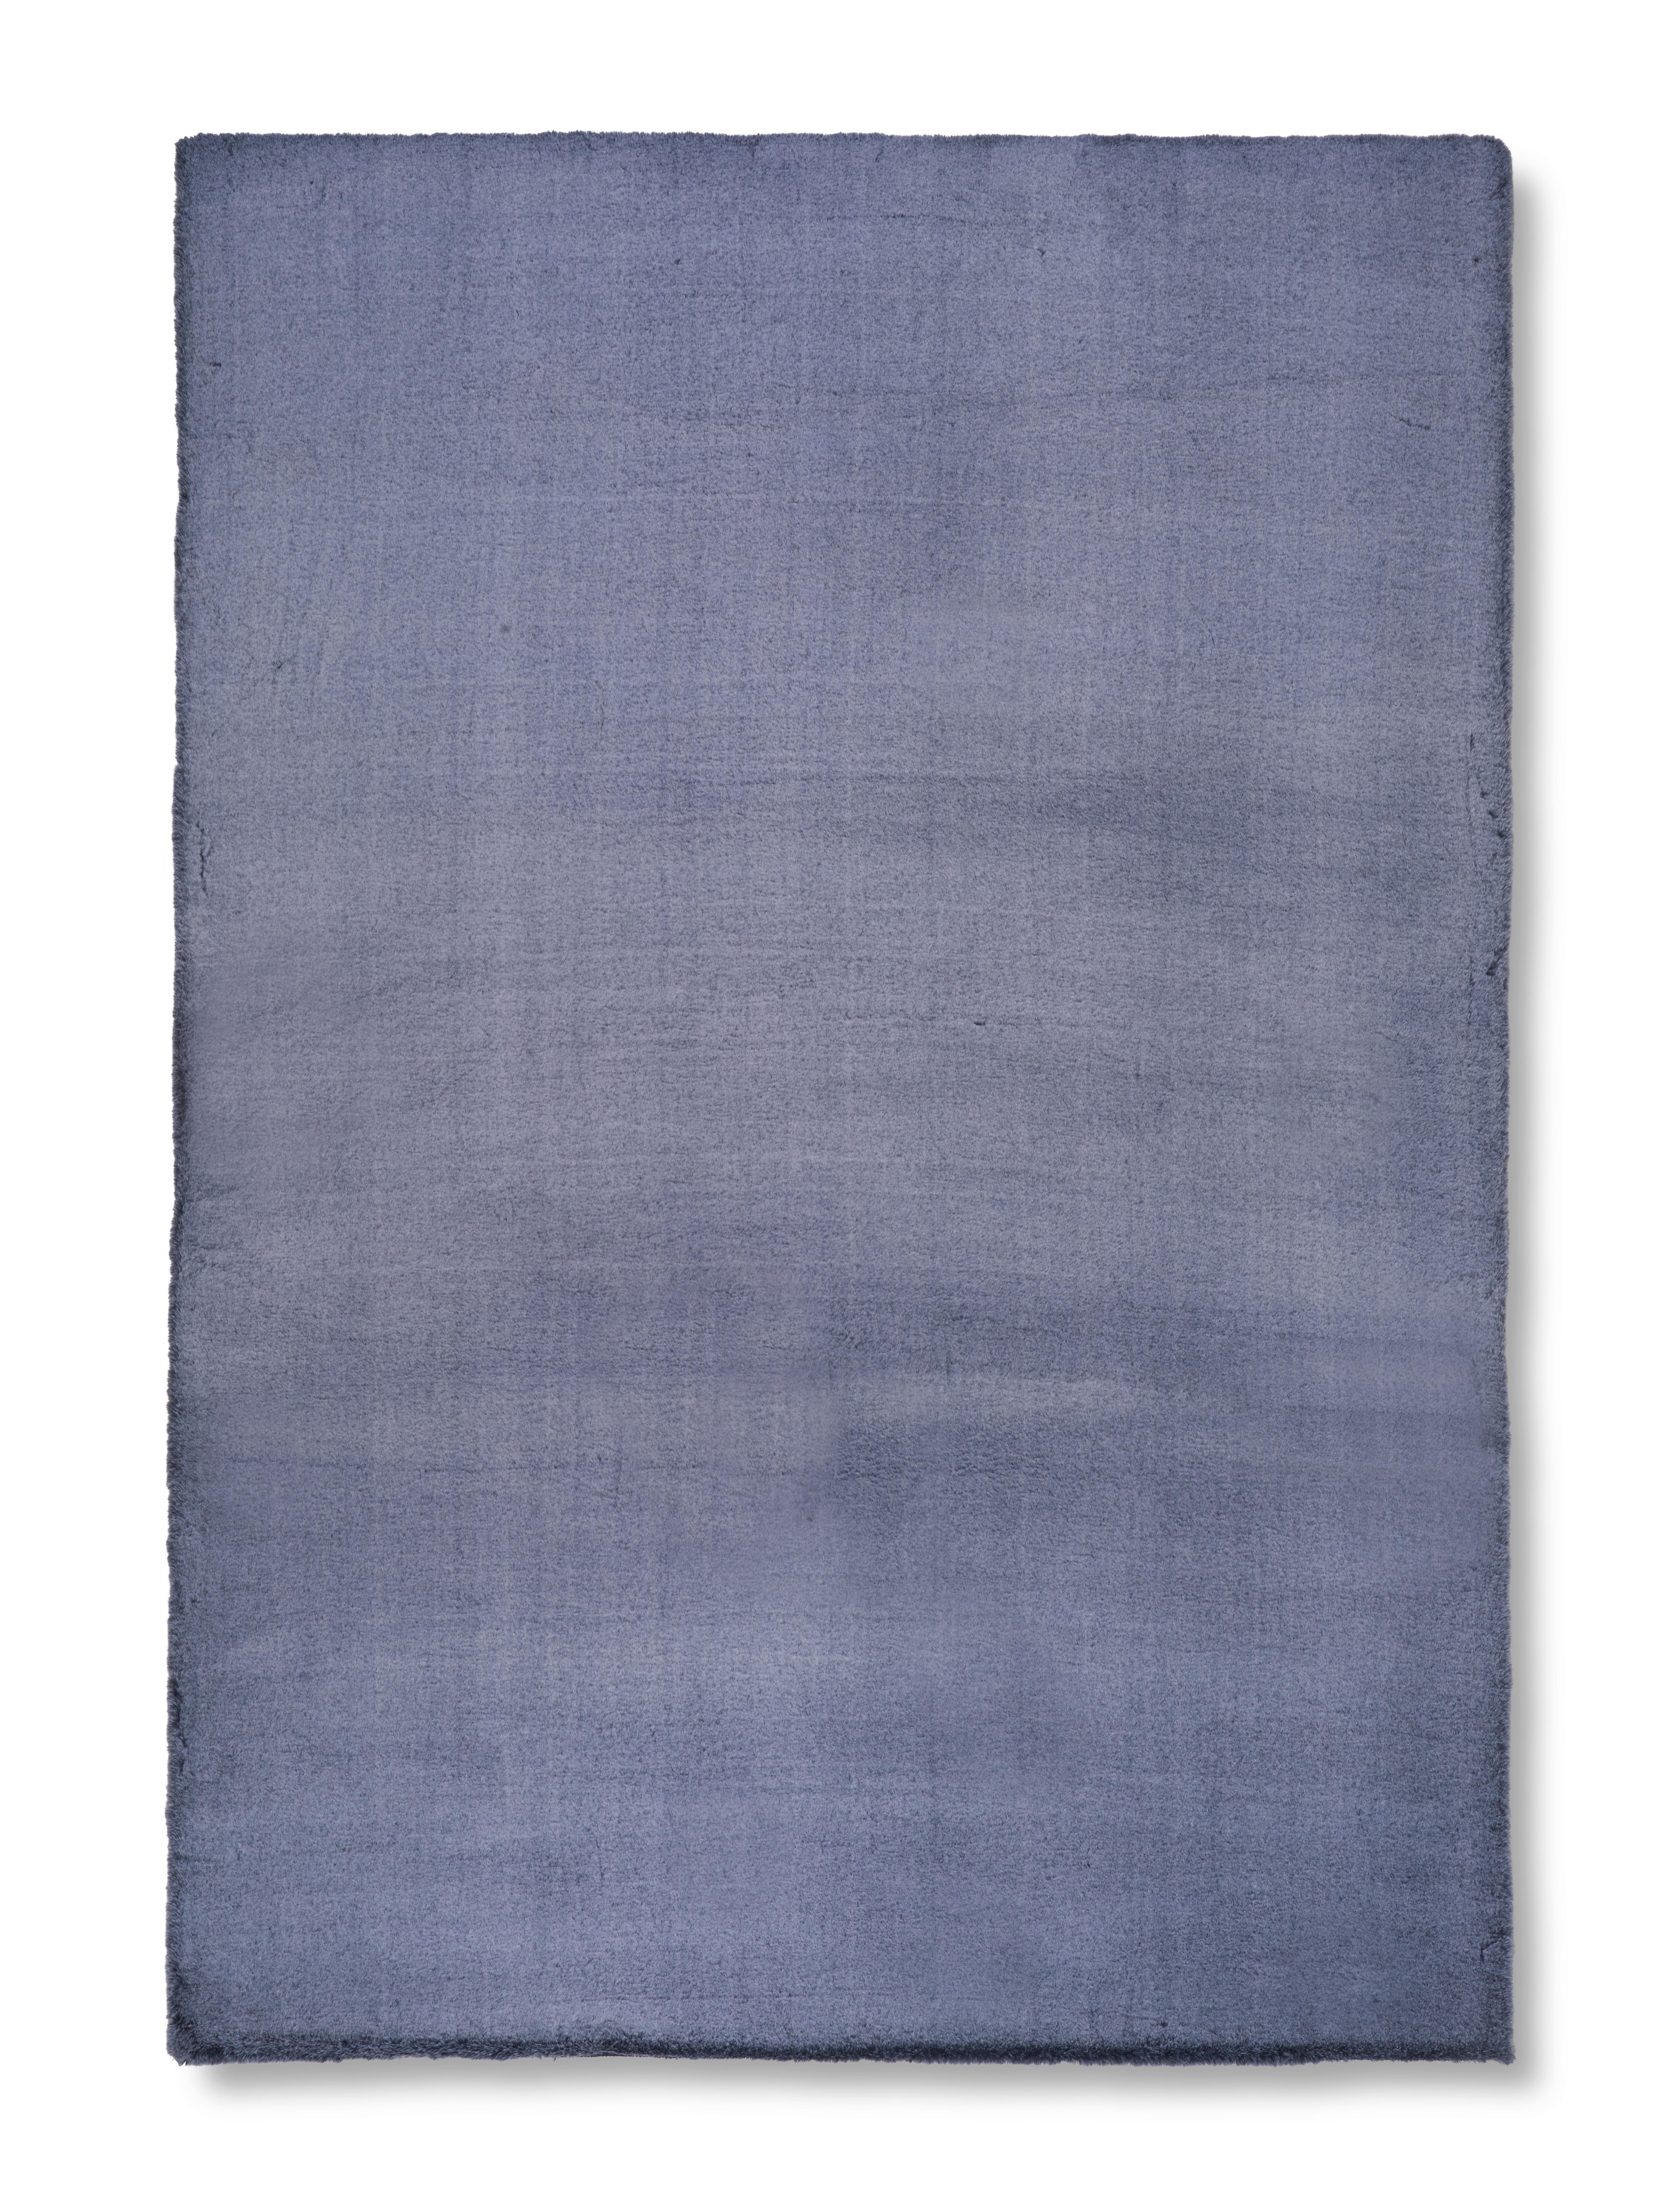 Kunstfell Denise 1 in Anthrazit ca. 80x150cm - Anthrazit, ROMANTIK / LANDHAUS, Textil/Fell (80/150cm) - Modern Living